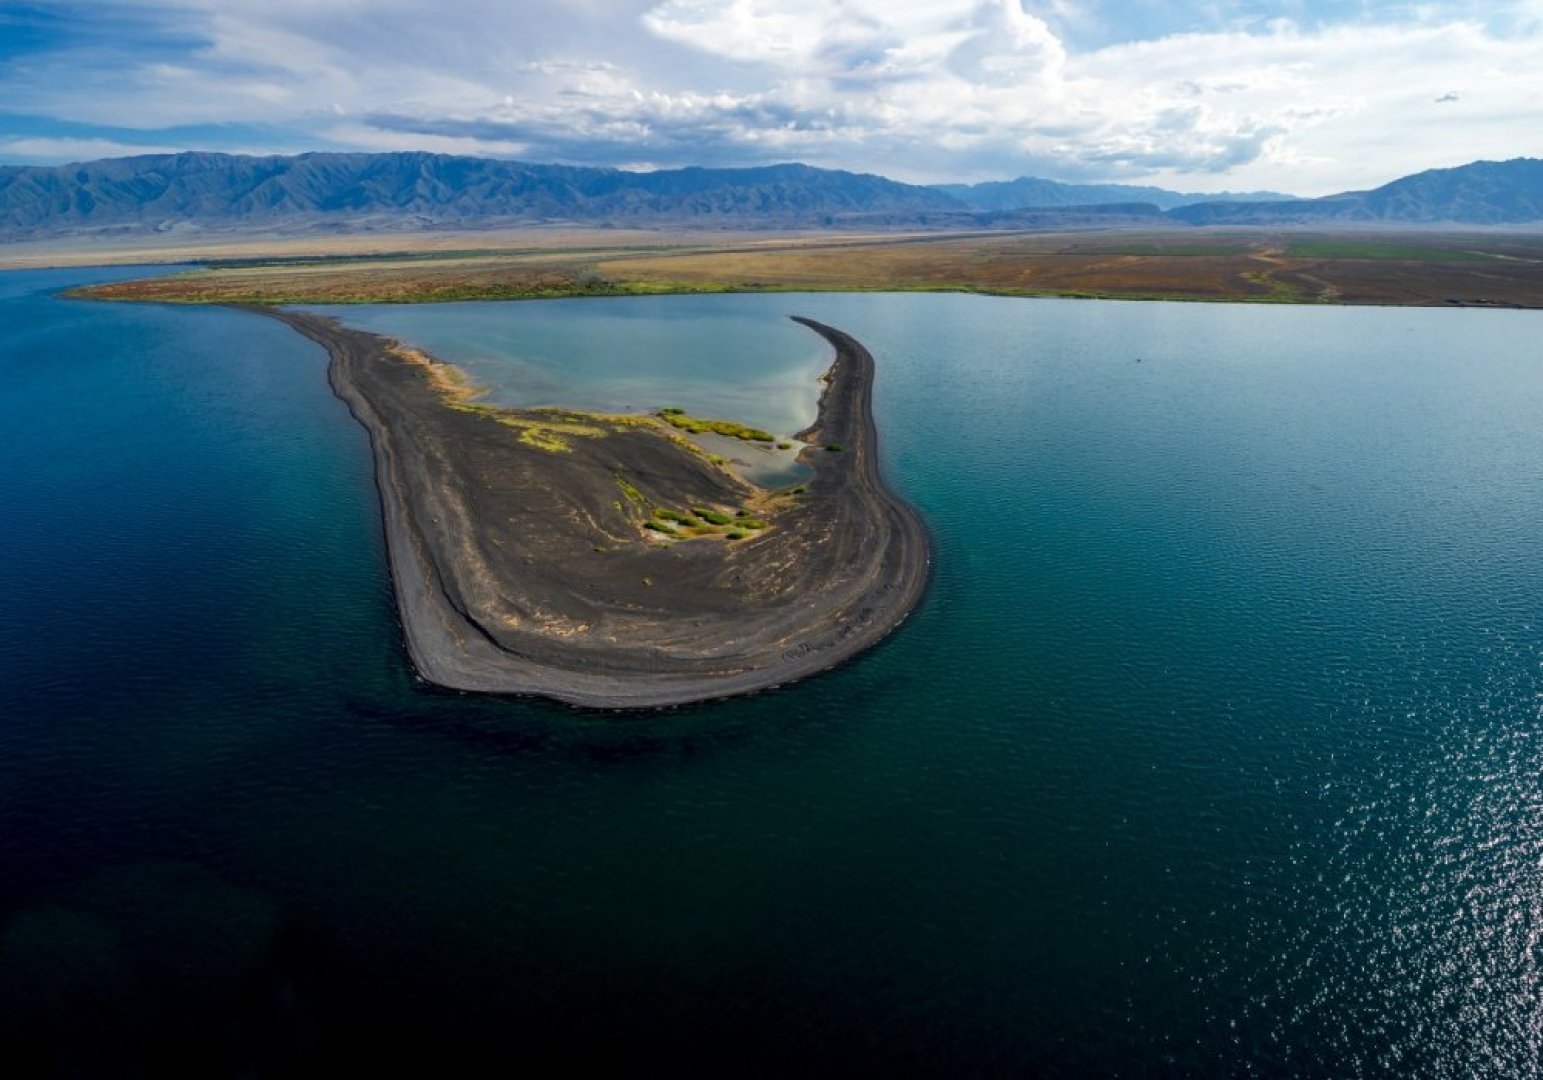 Тремя крупнейшими озерами. Алаколь озеро в Казахстане. Озеро Балхаш. Озеро Балха́ш Казахстана. Озеро Балхаш Казахстан фото.